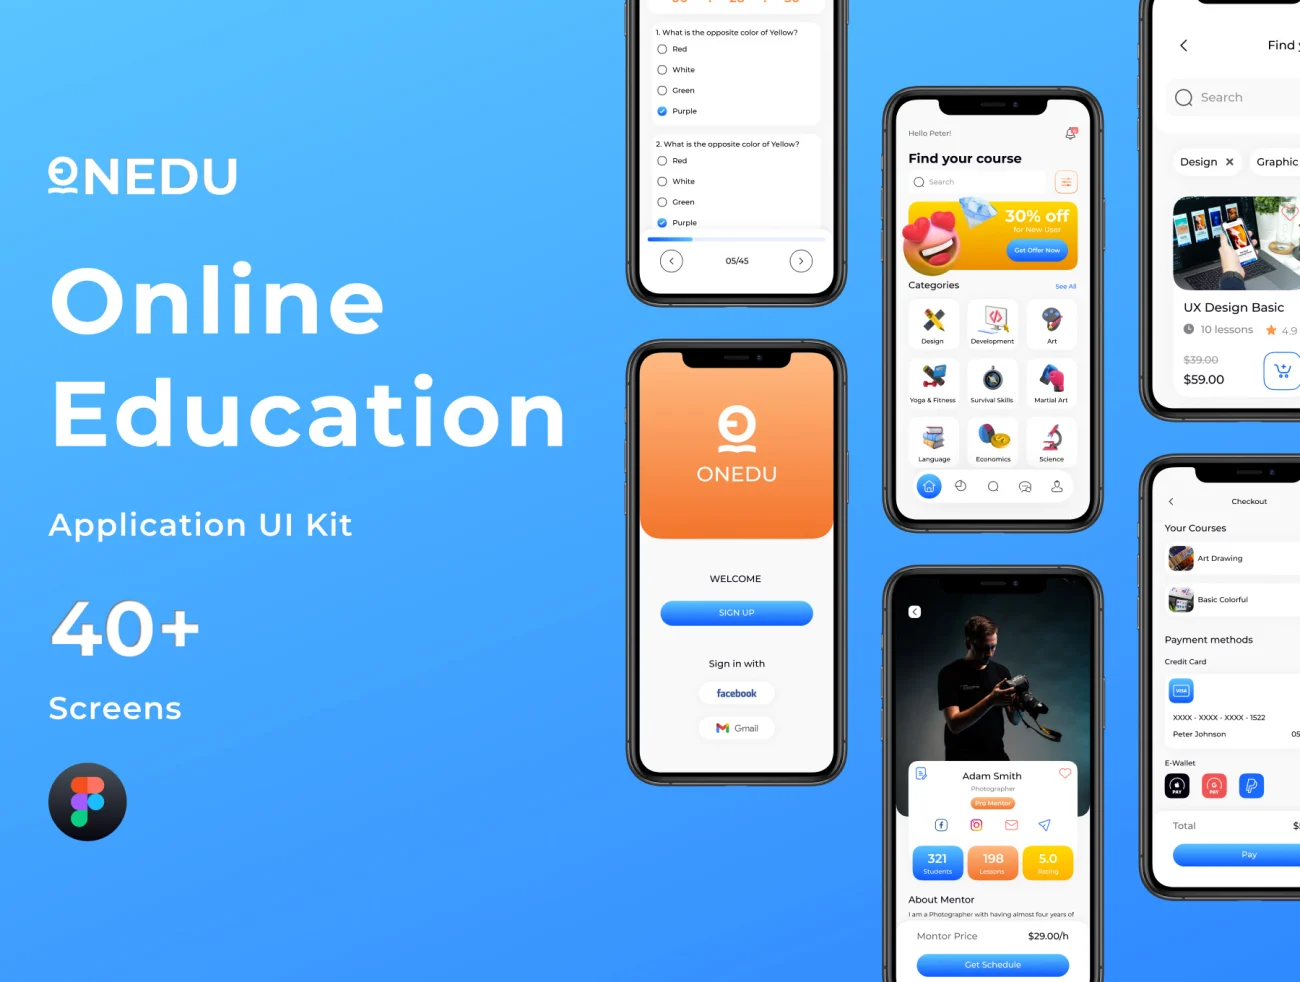 45屏在线教育应用UI套件 ONEDU – Online Education App UI Kit插图1